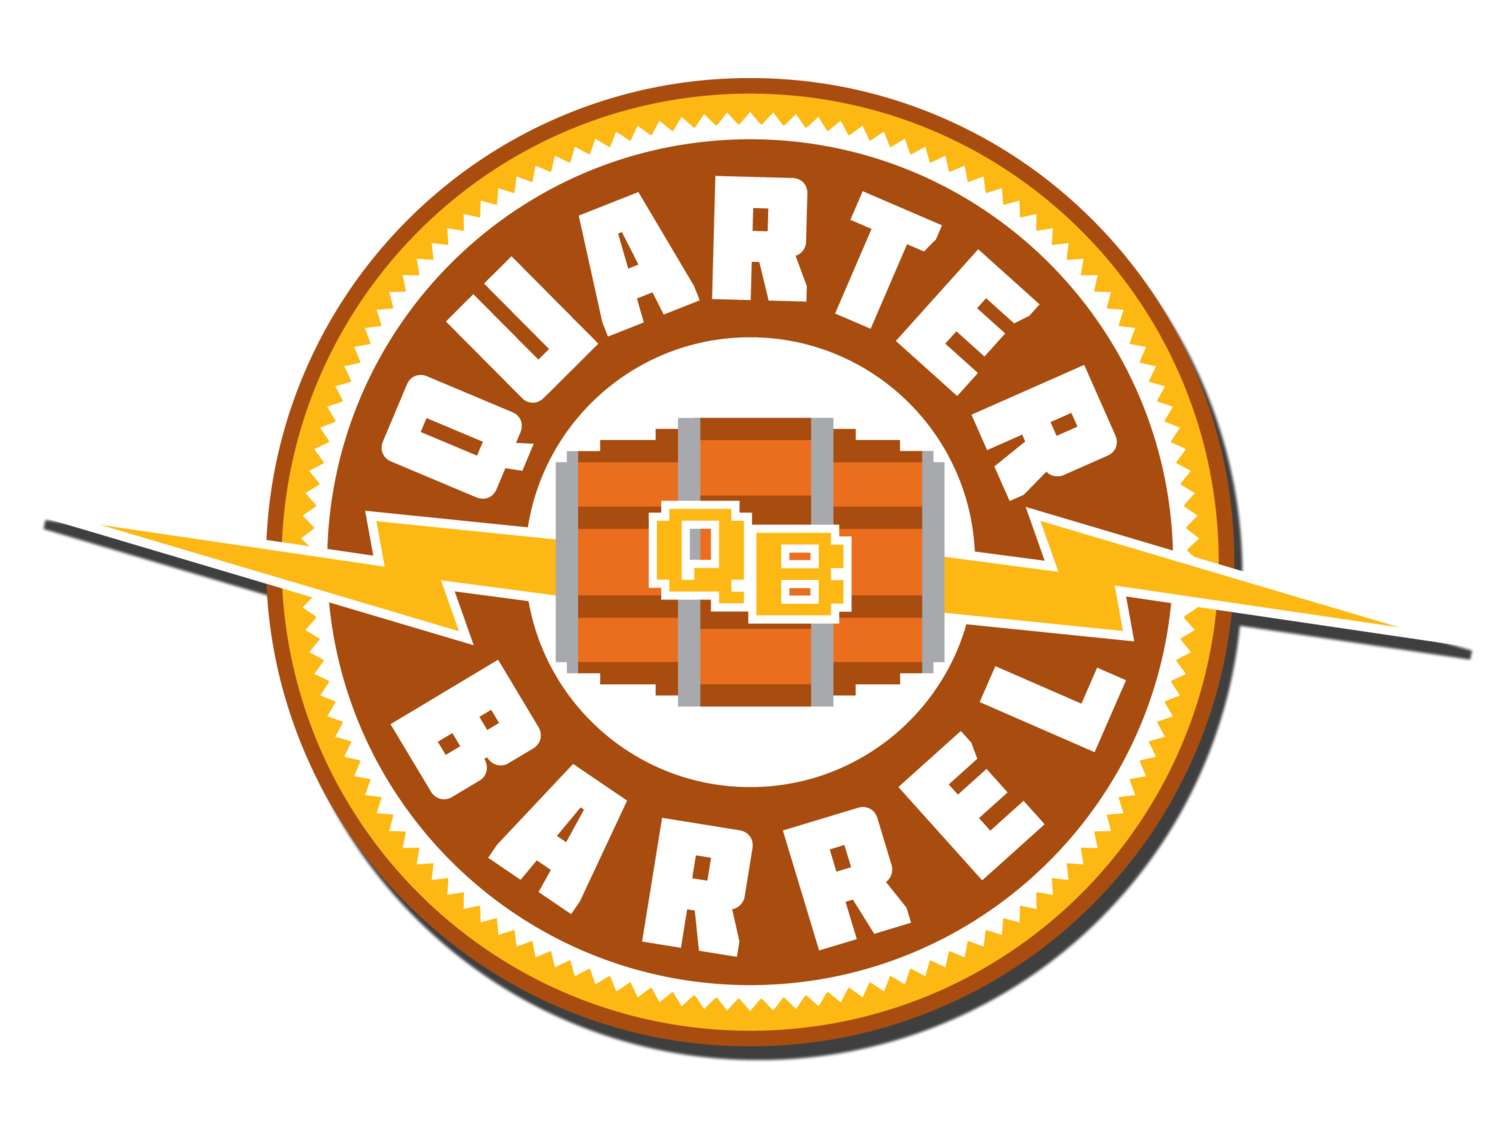 The Quarter Barrel Arcade & Brewery